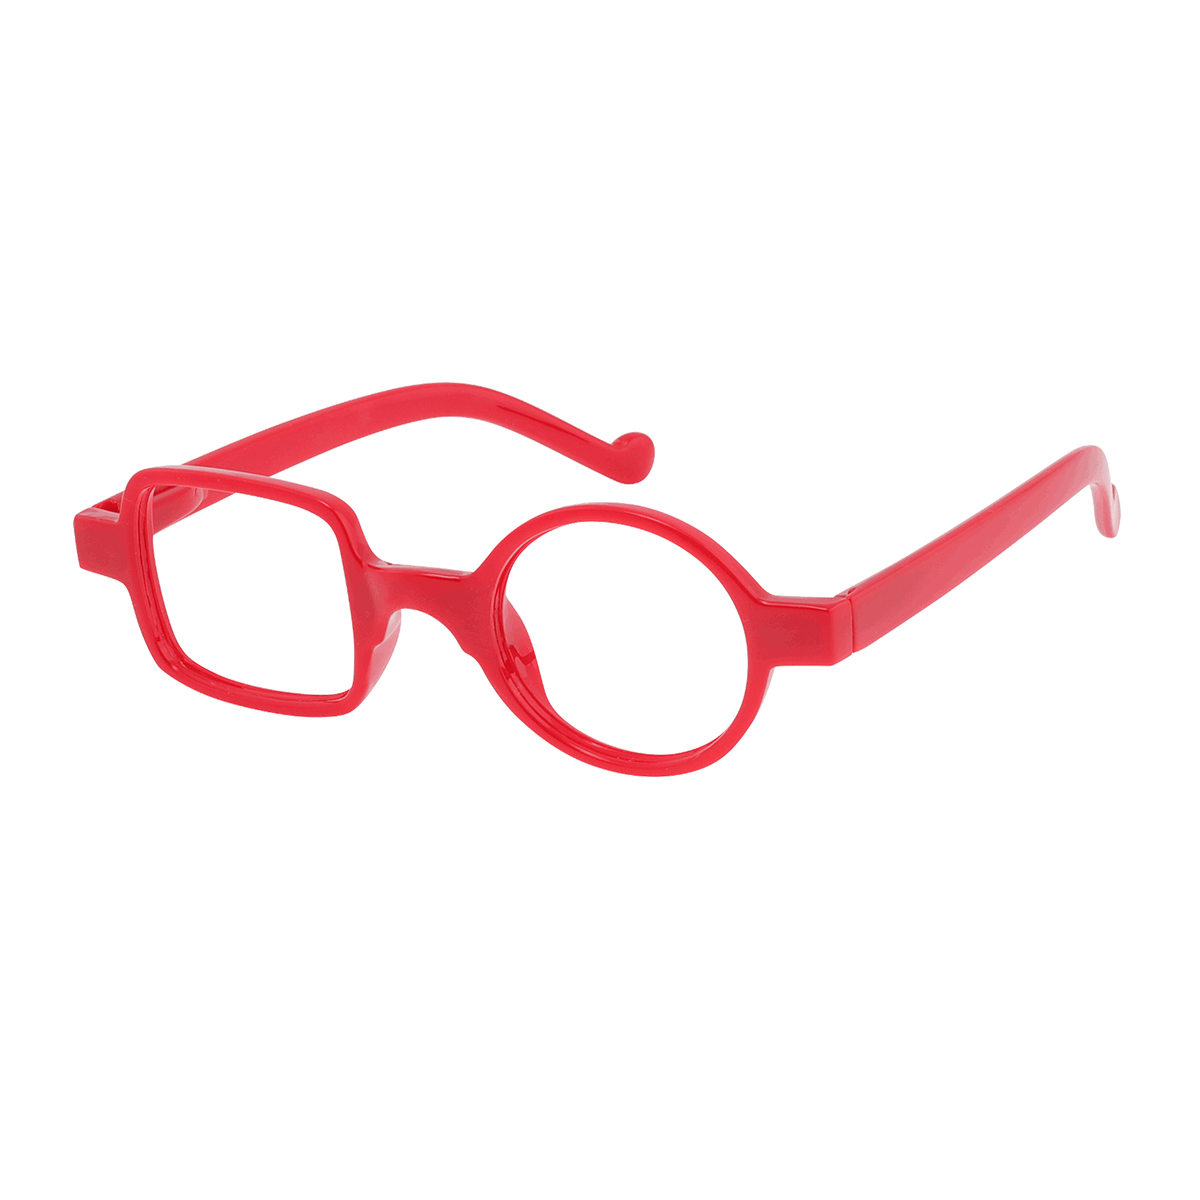 Meeks - Geometric Red Reading Glasses for Men & Women